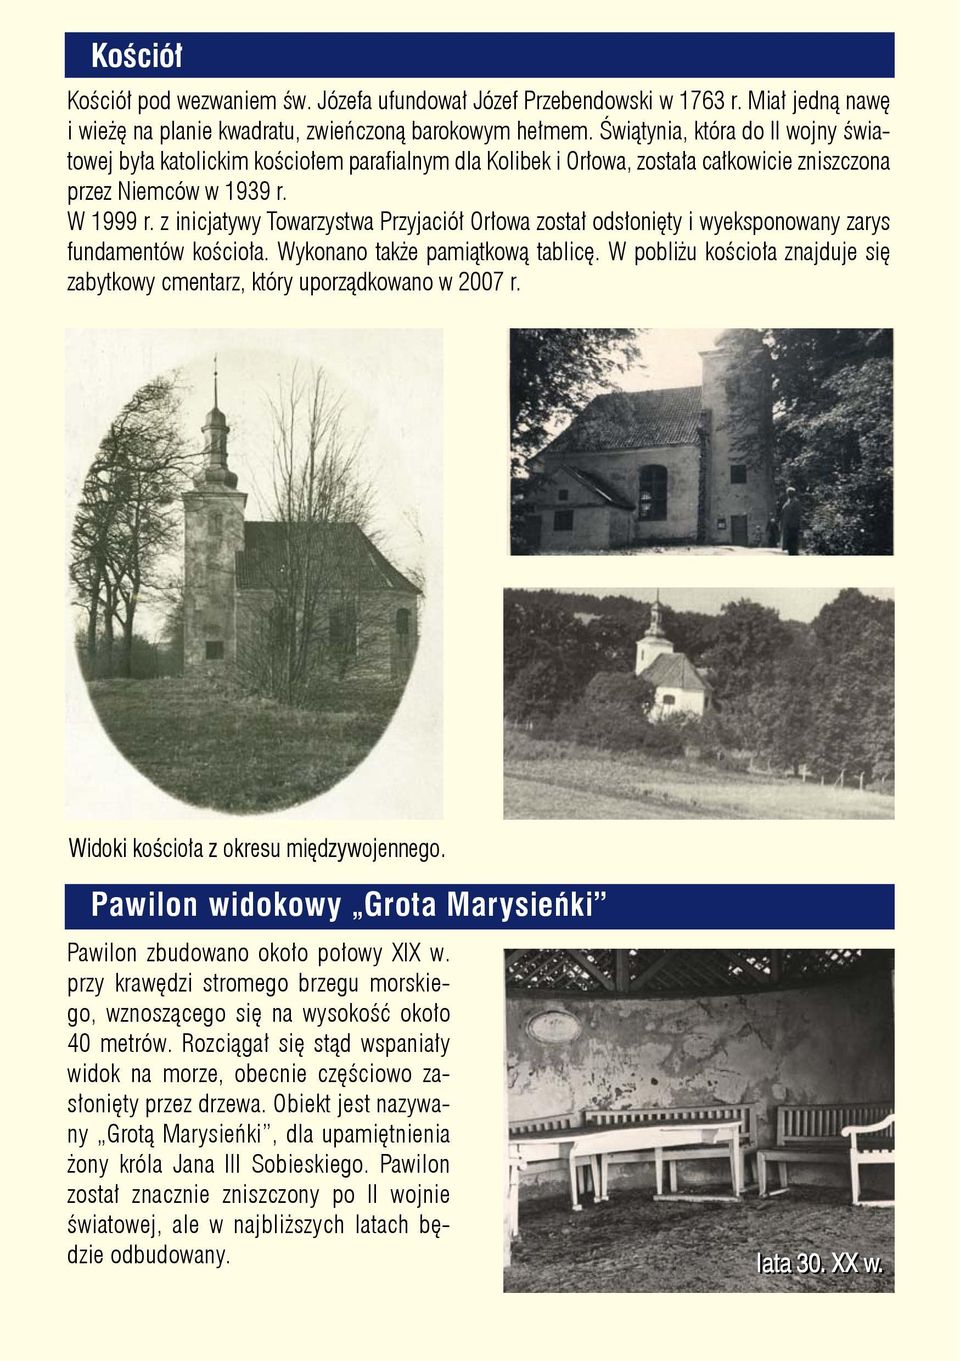 z inicjatywy Towarzystwa Przyjaciół Orłowa został odsłonięty i wyeksponowany zarys fundamentów kościoła. Wykonano także pamiątkową tablicę.